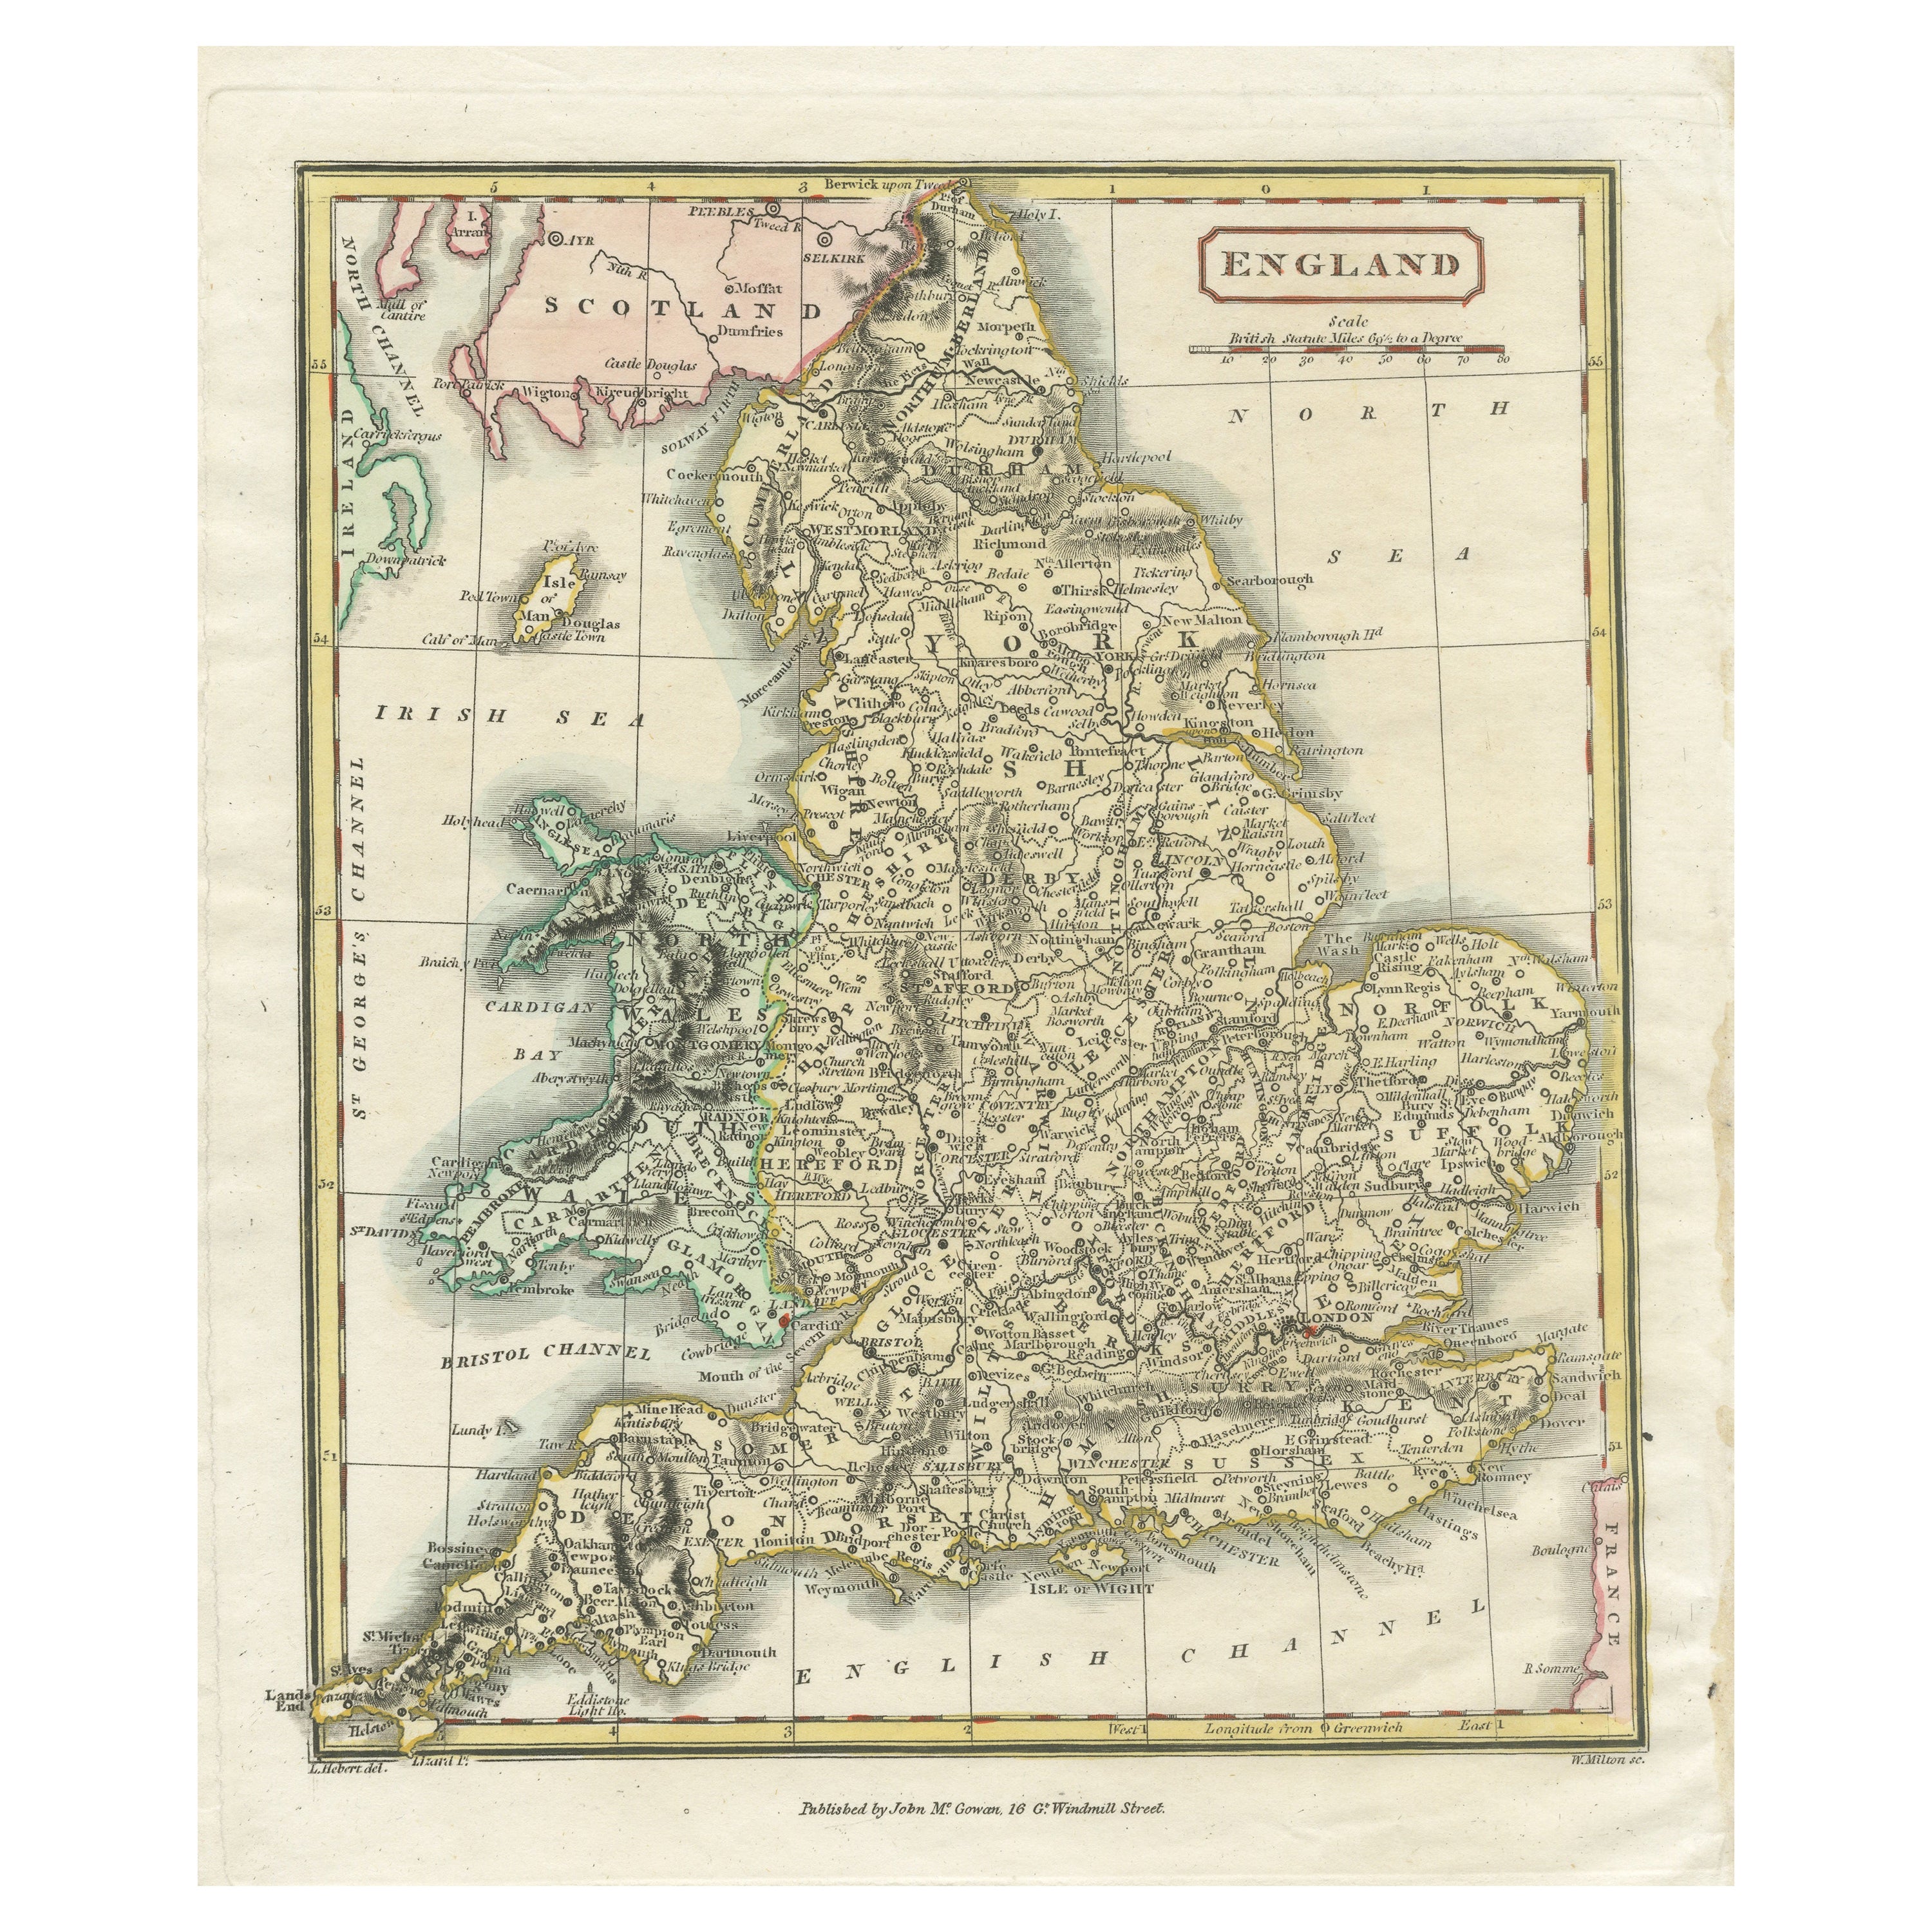 Originale antike Karte von England mit handkolorierter